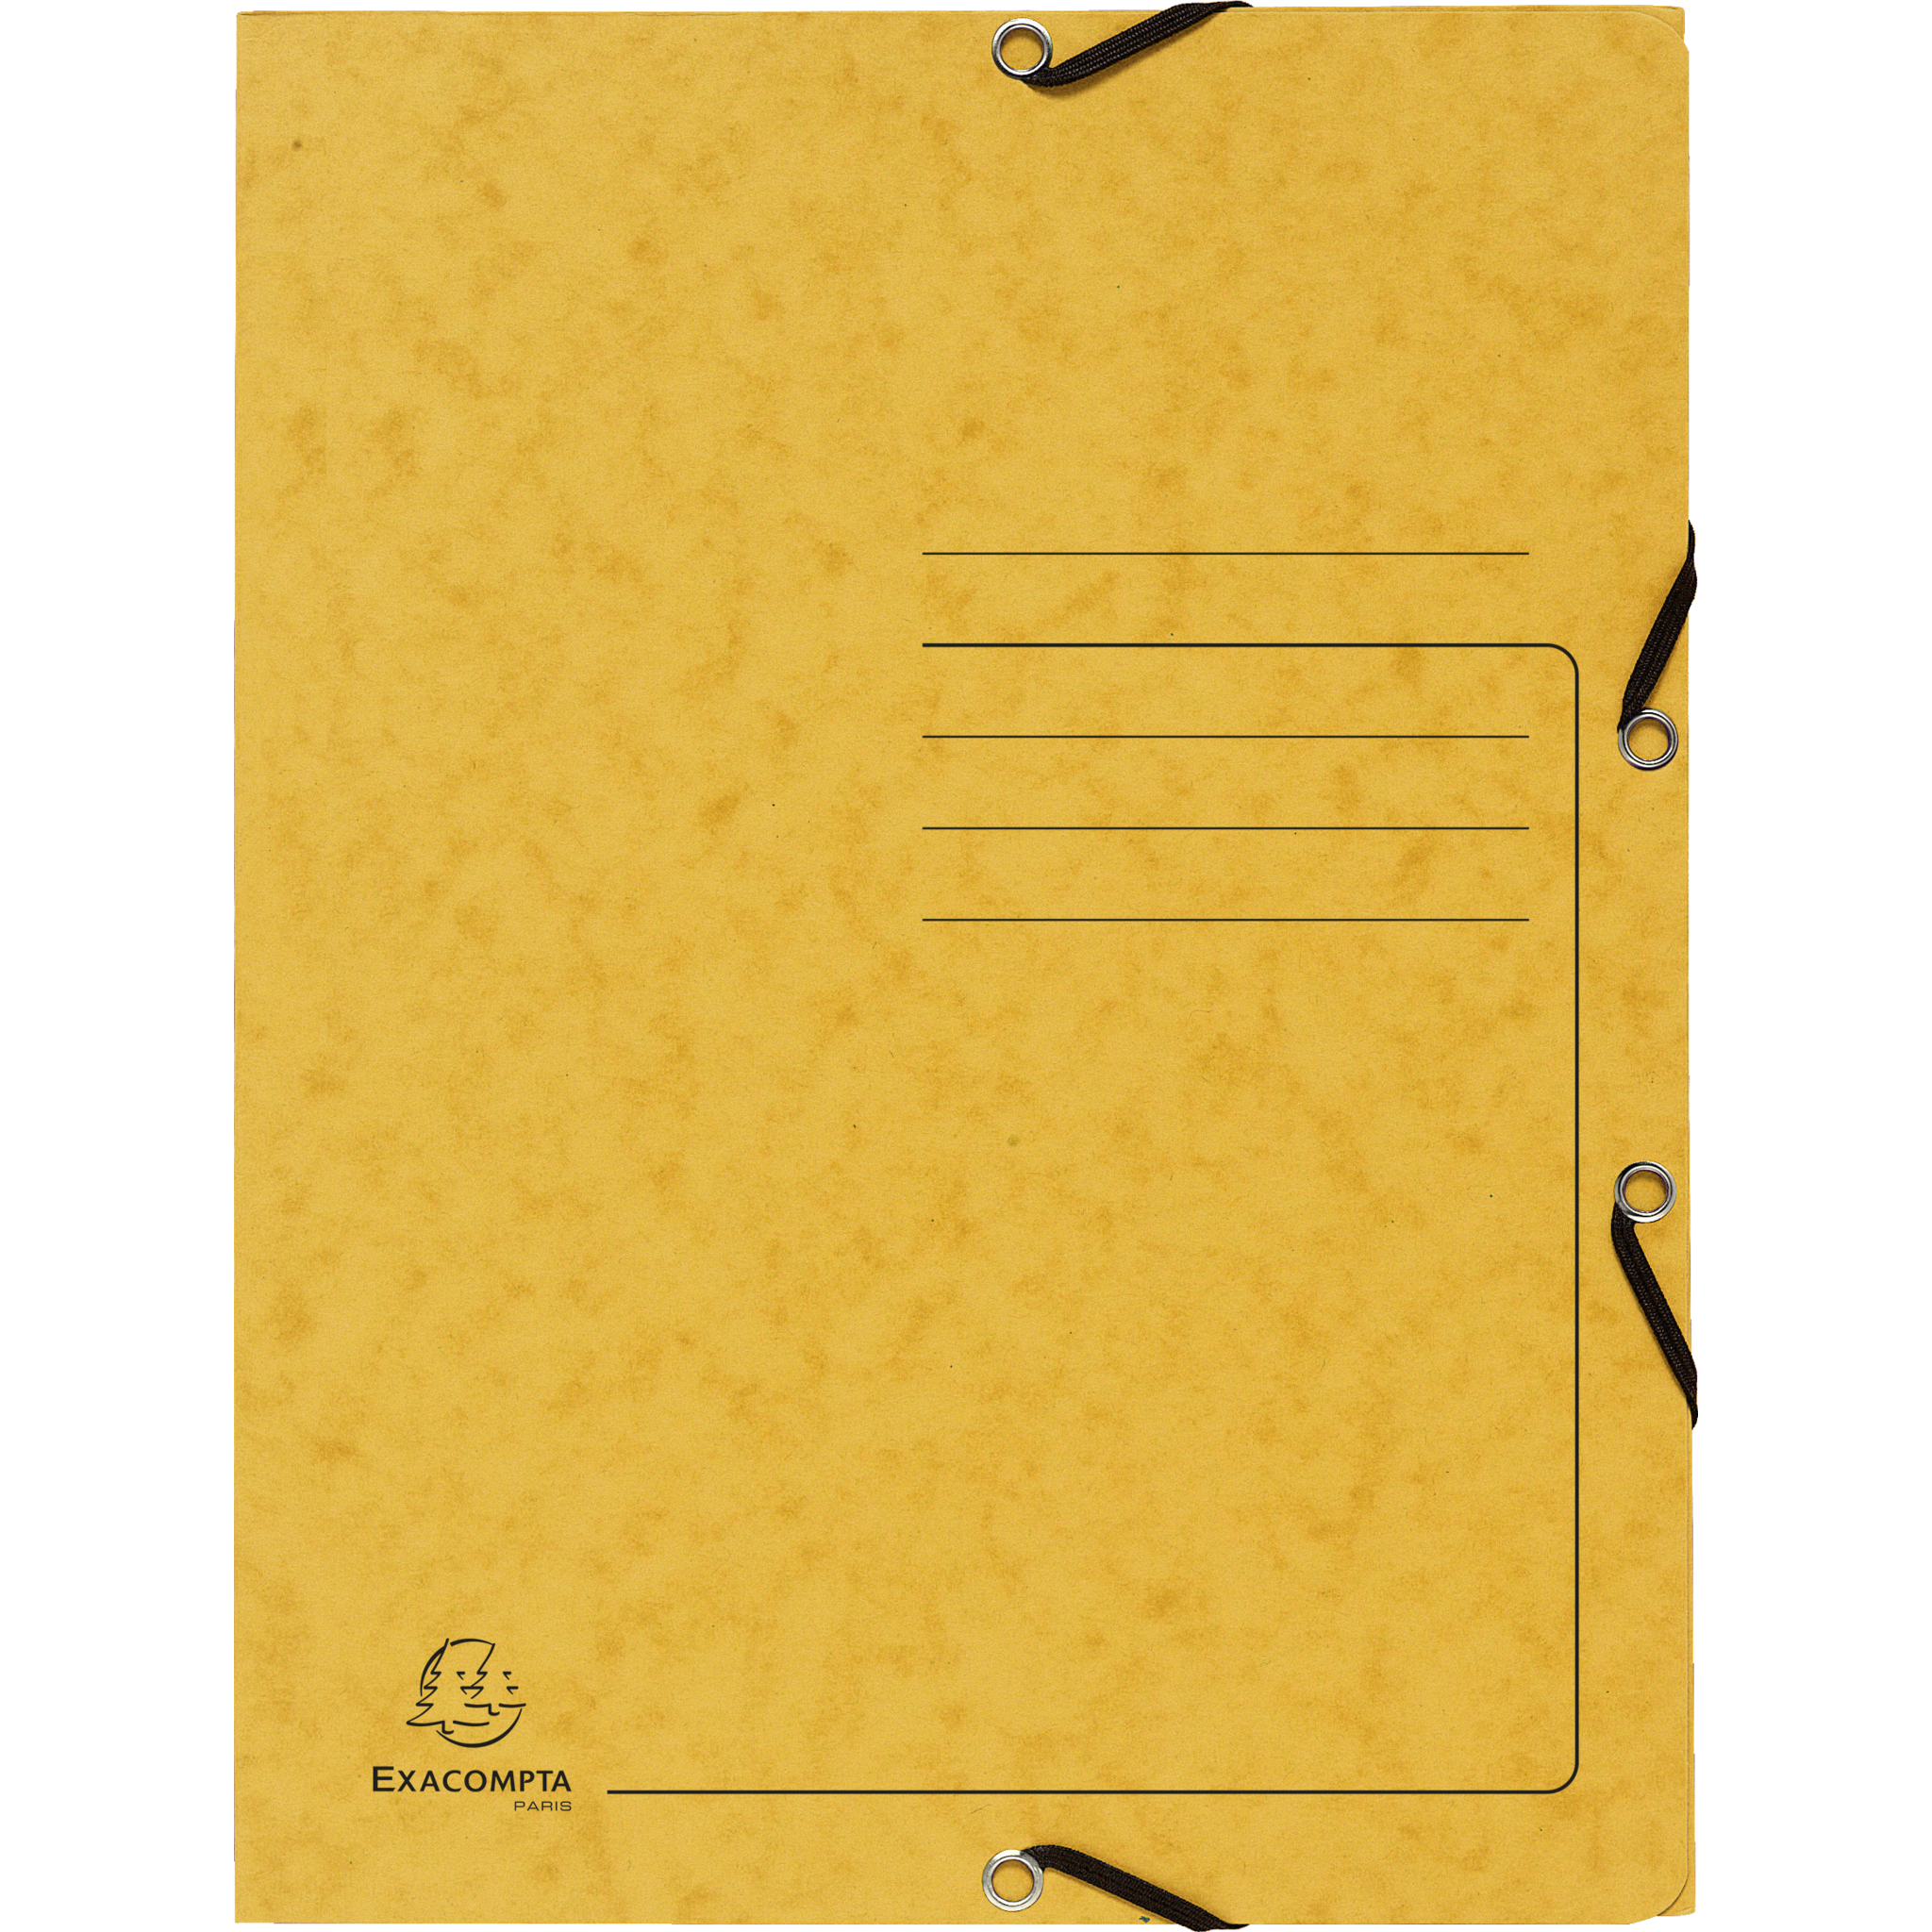 EXACOMPTA Sammelmappe mit Gummizug und 3 Klappen aus Colorspan-Karton 355g/m2 - A4 - Gelb